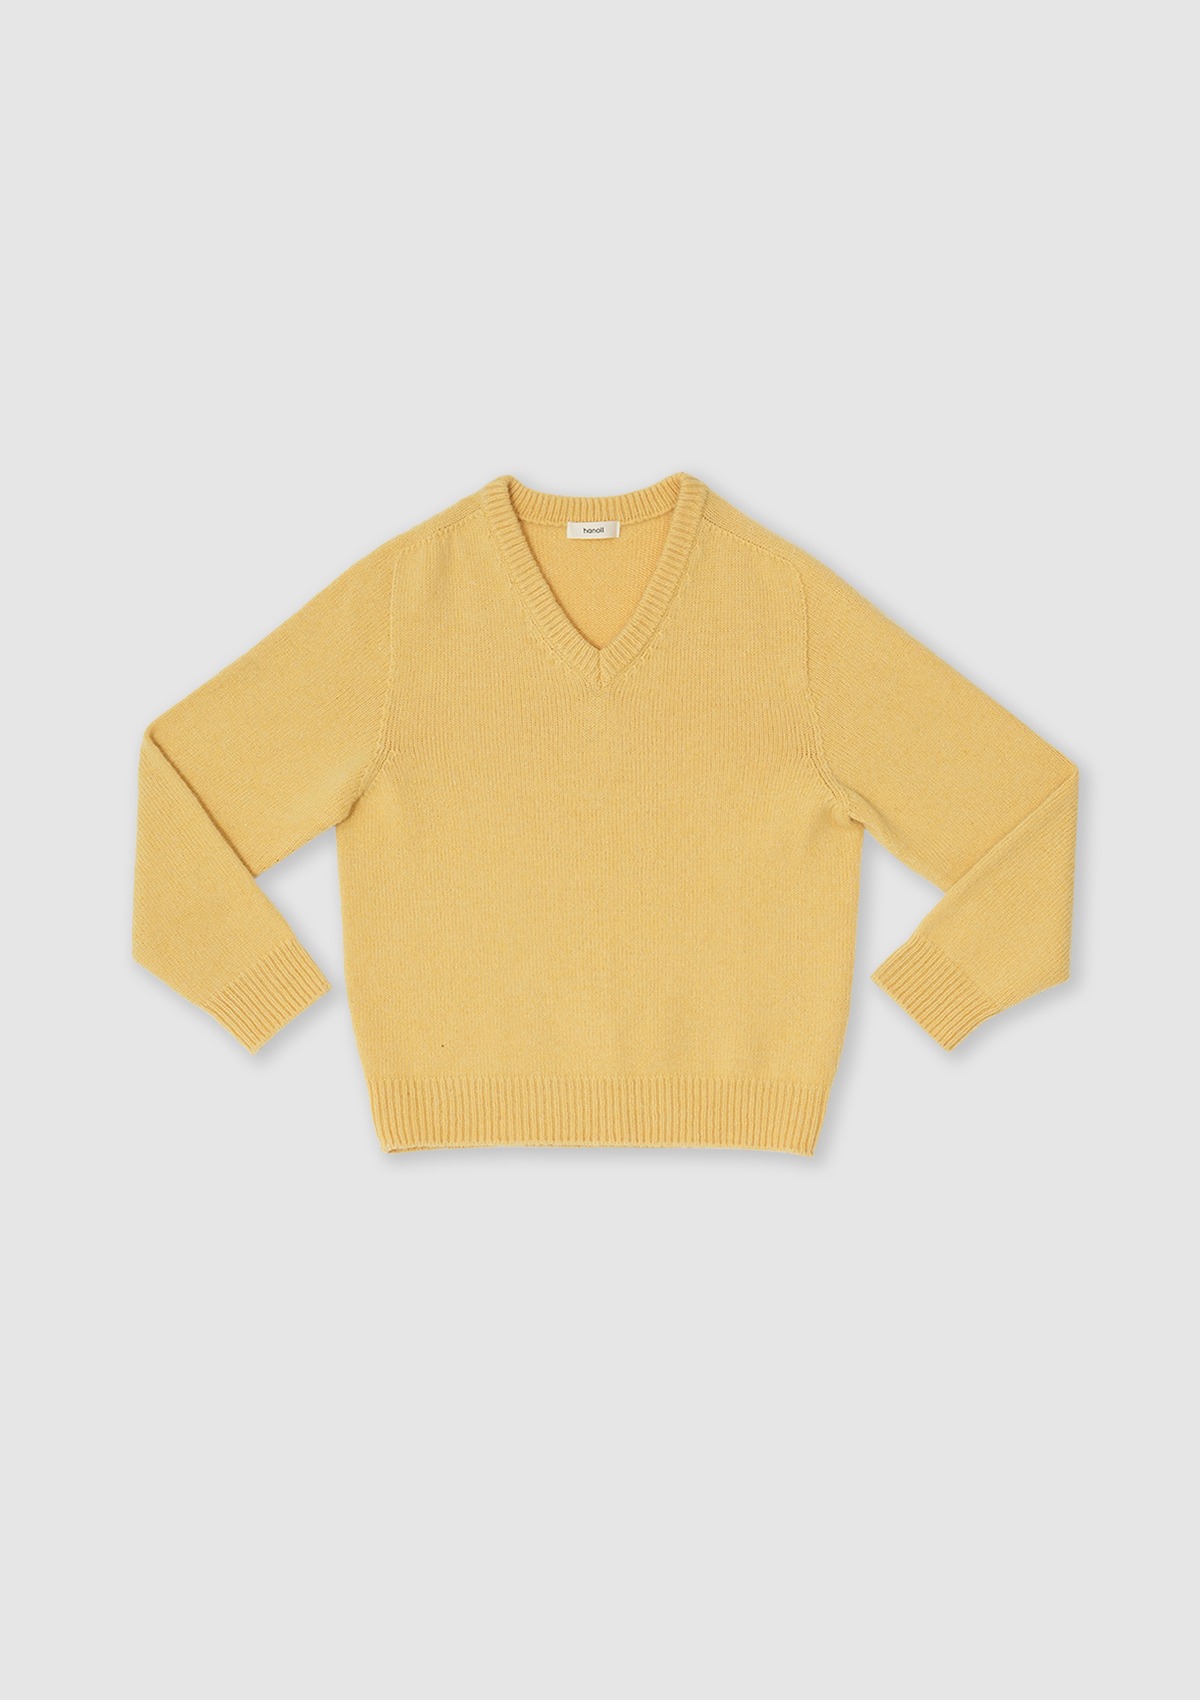 Leez knit (Yellow)